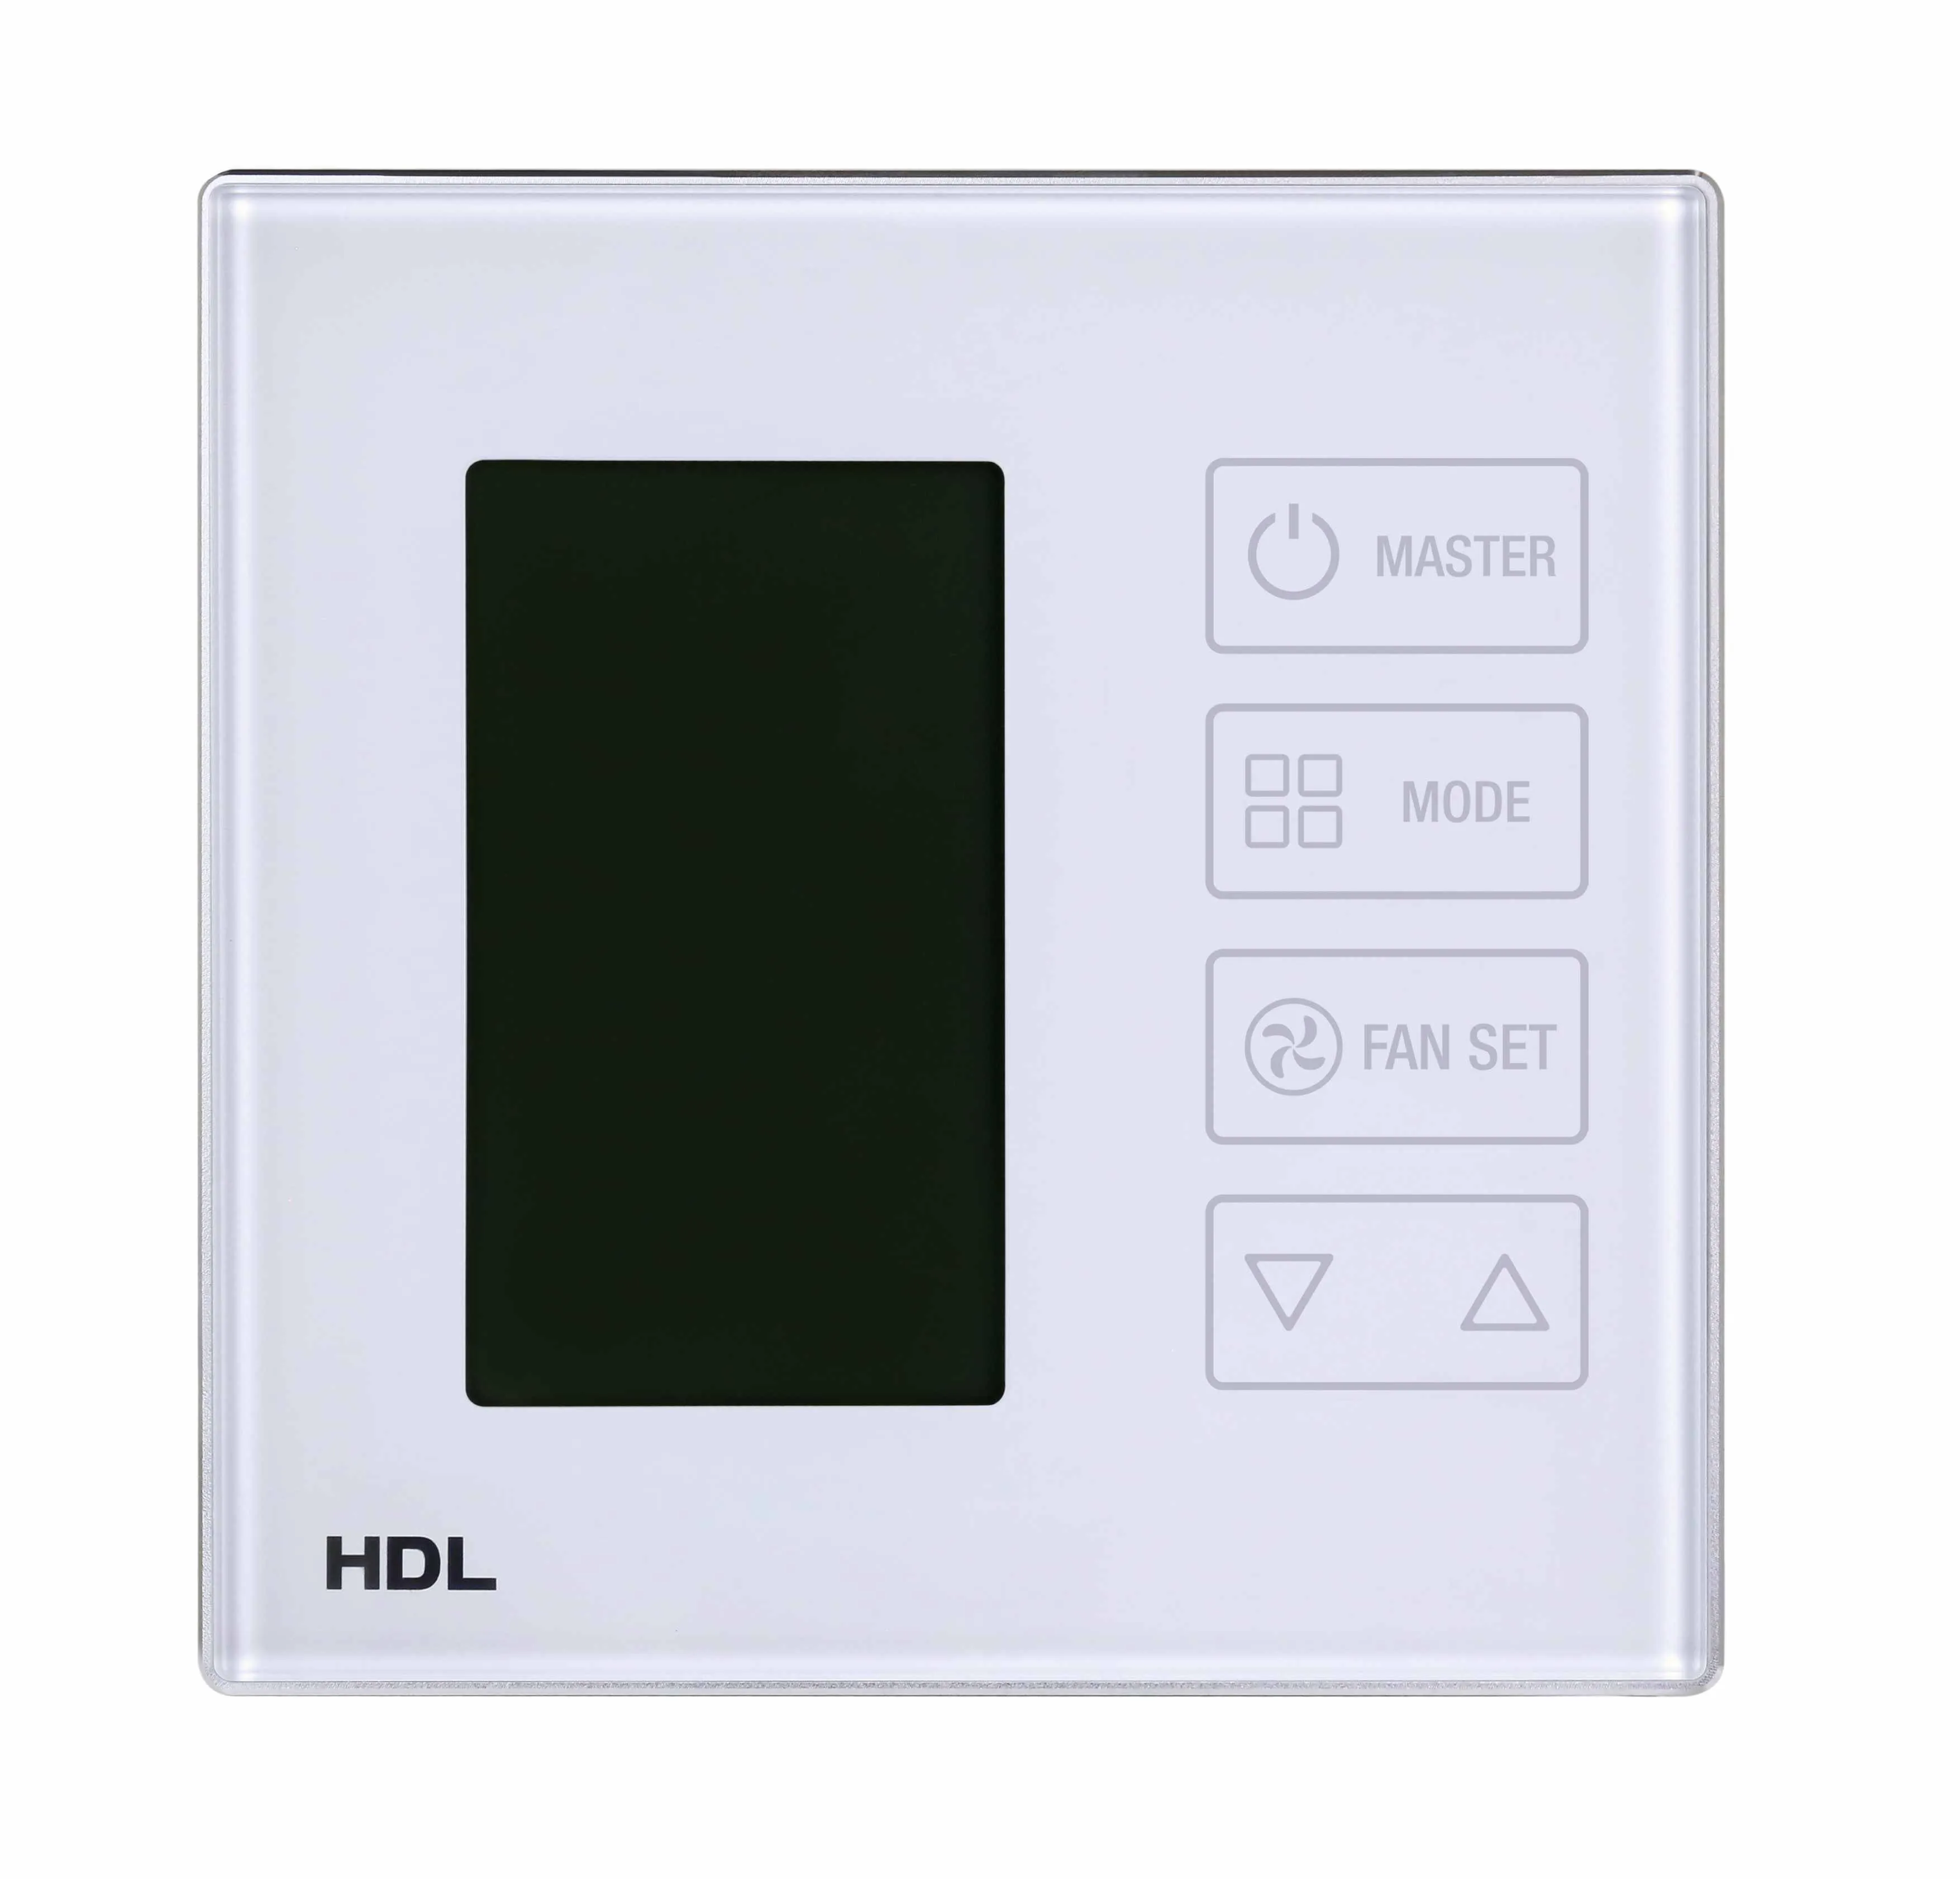 Сенсорный термостат с экраном DLP (без шинного соединителя HDL-MPLPI.48-A) фото 4